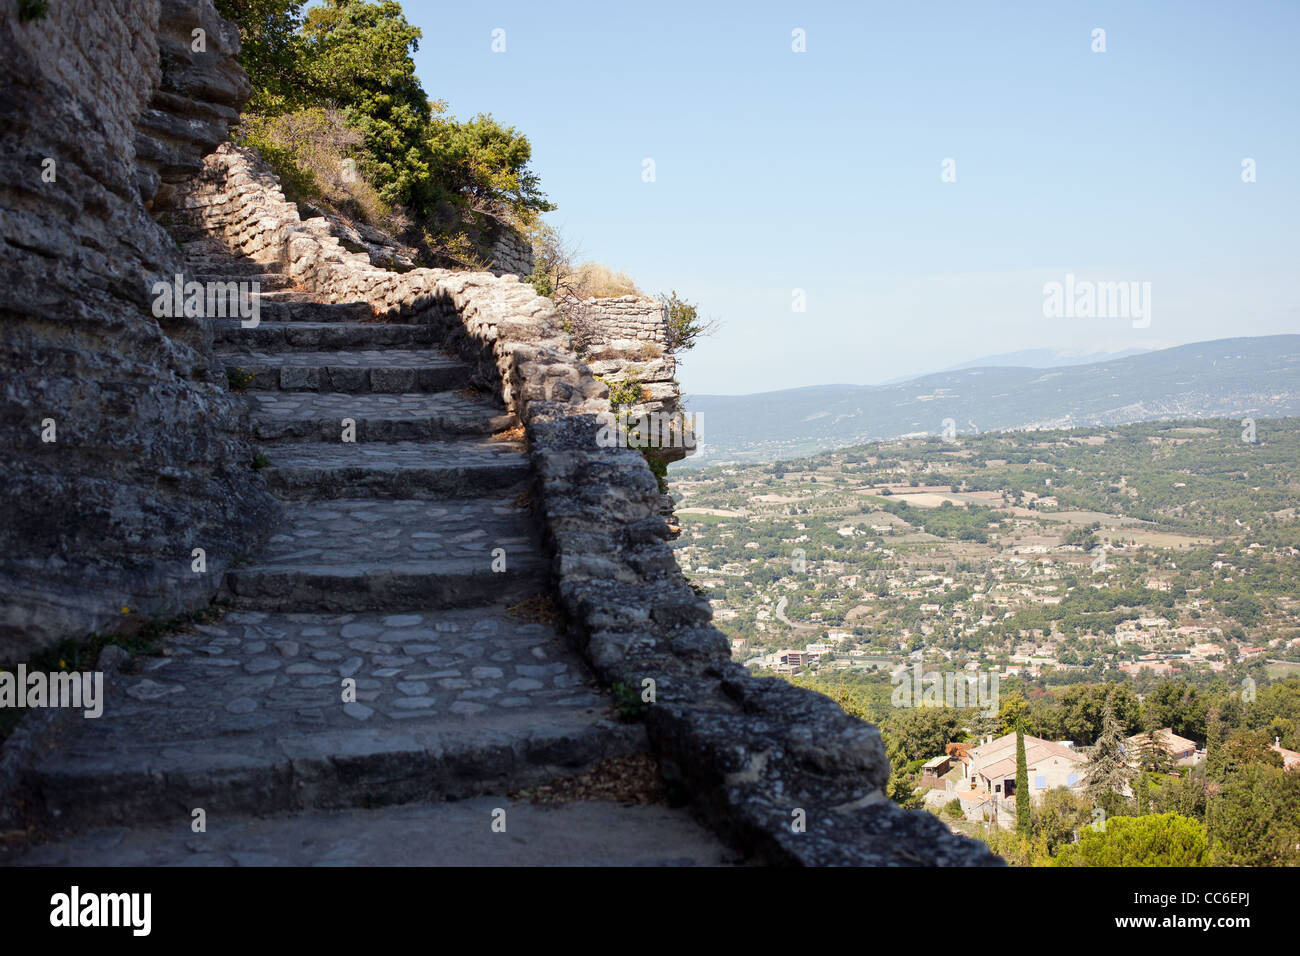 Una vecchia passerella di pietra si arrampica sul fianco di una scogliera nella bellissima città francese di Saignon Foto Stock